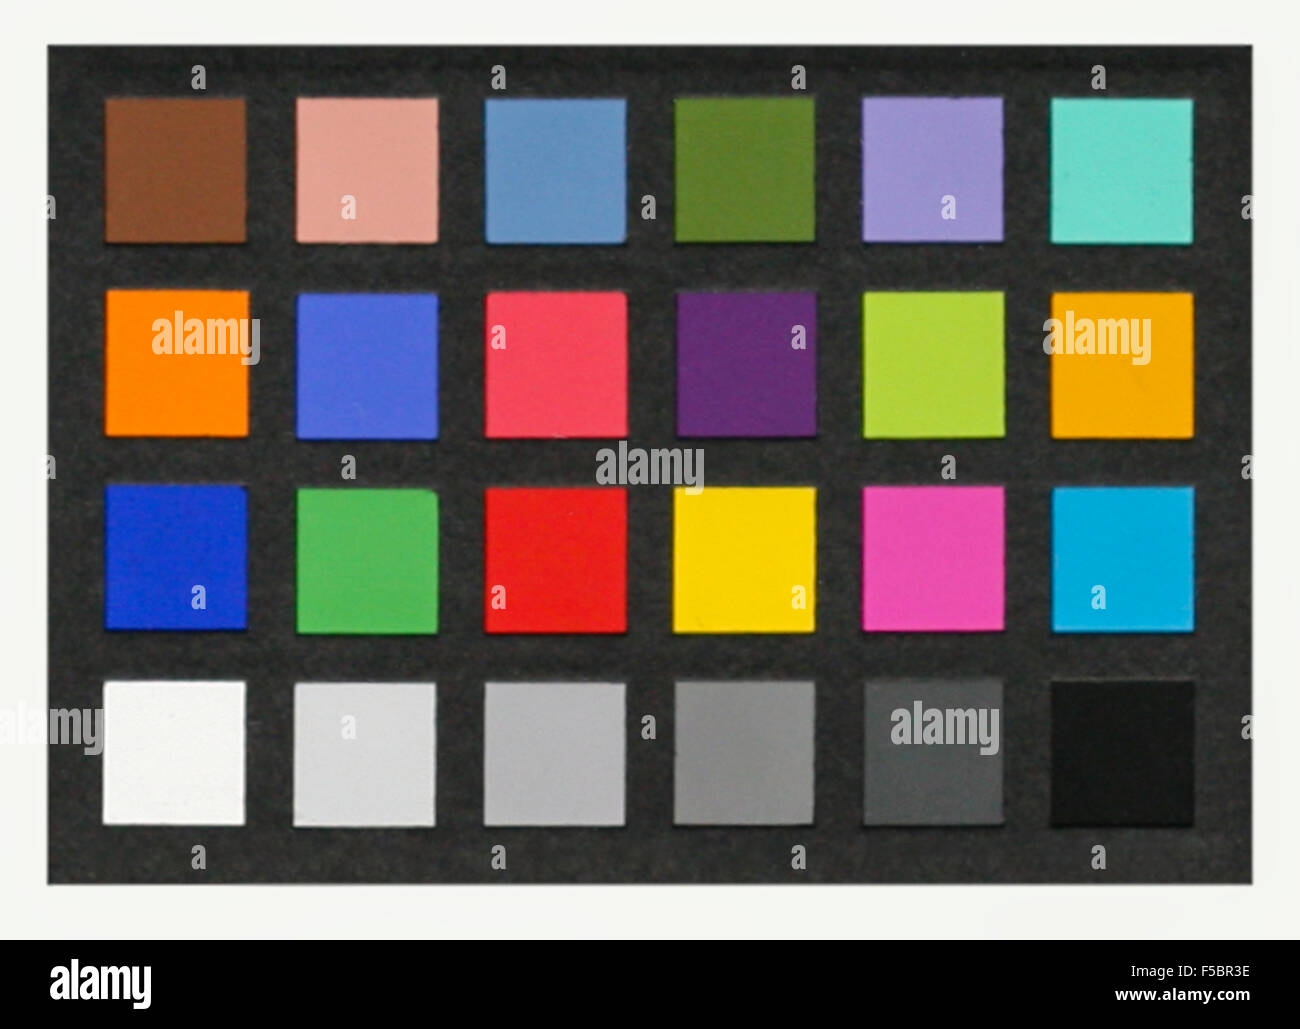 Farbkarte von Fotografen verwendet, um genaue Farbkorrektur und Reproduktion in der Nachbearbeitung zu ermöglichen. Stockfoto